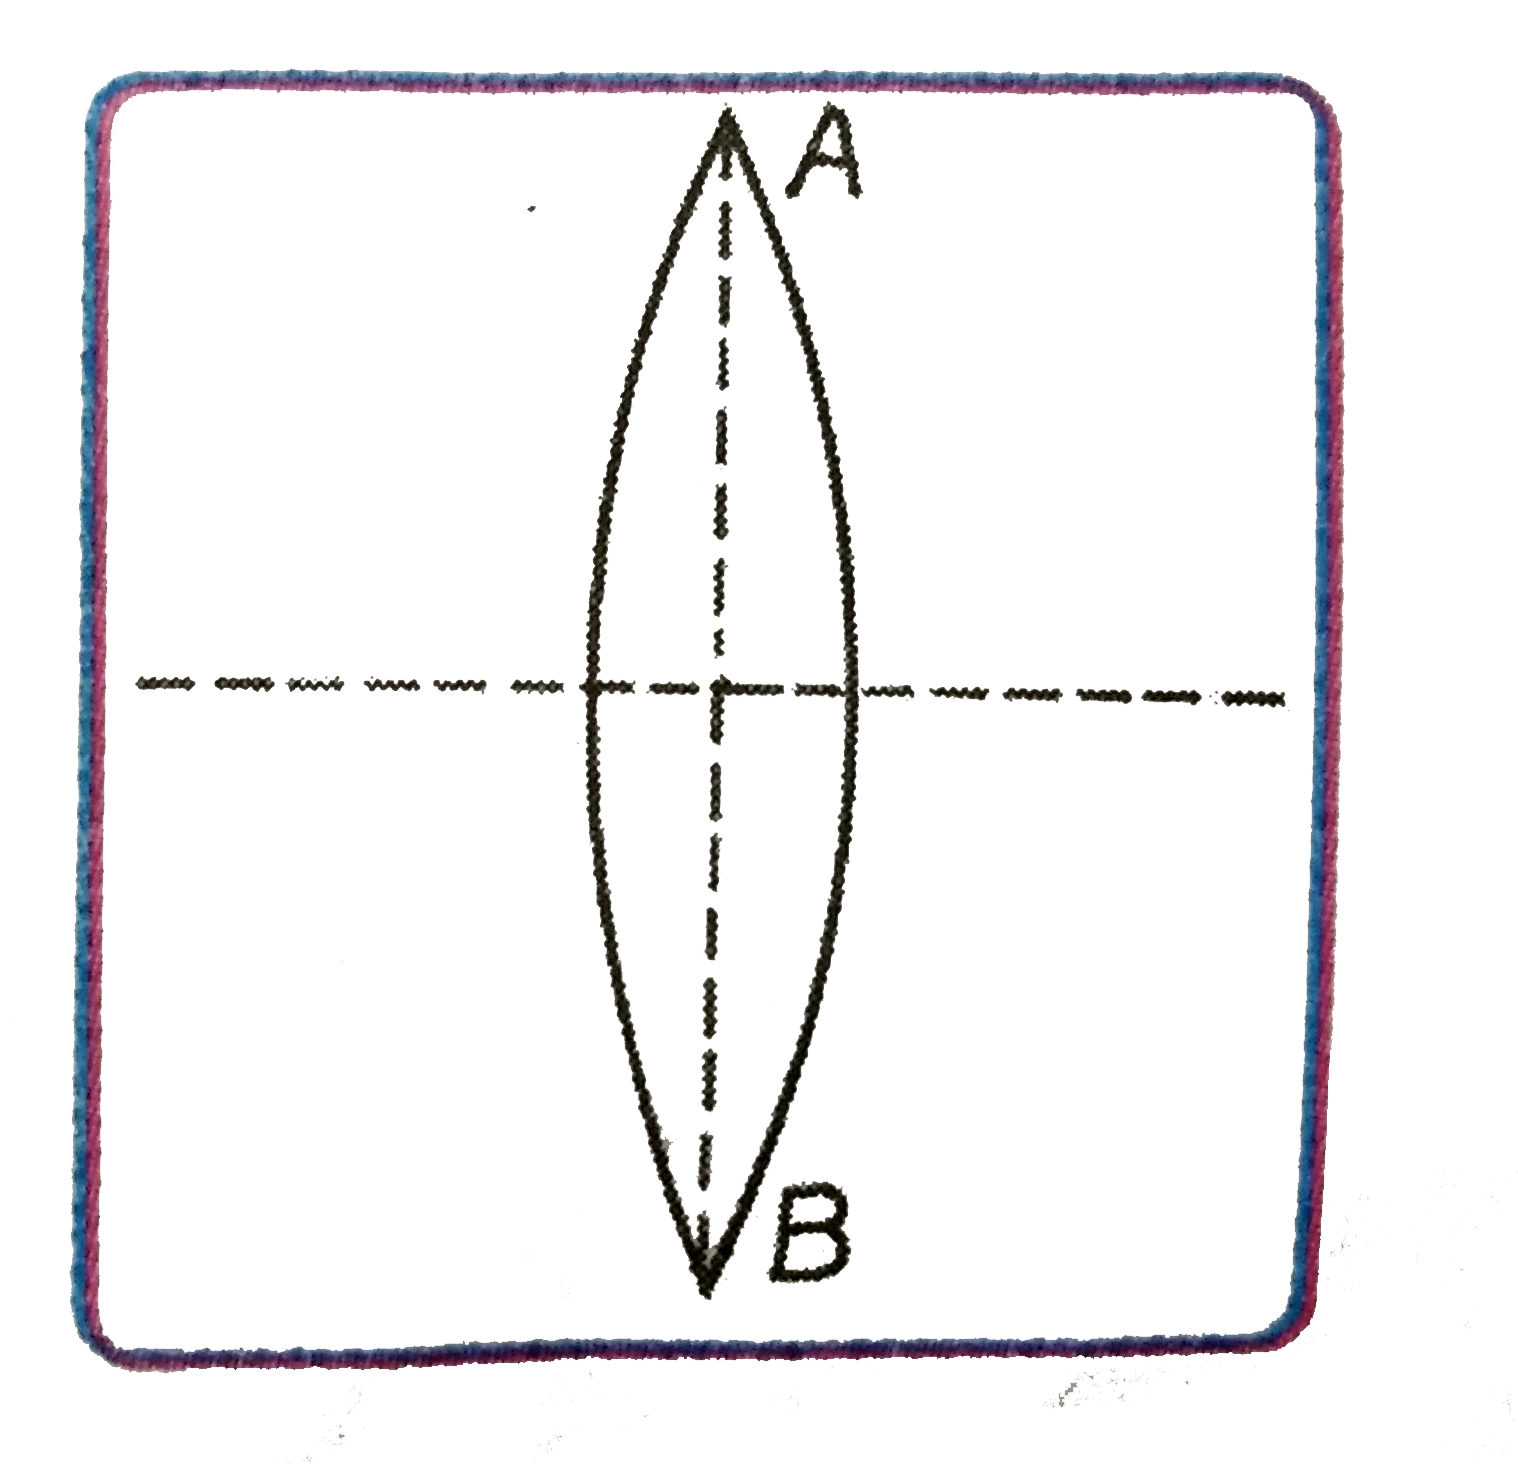 एक 10 सेमी वक्रता-त्रिज्या वाले काँच (n(g)=(4)/(3)) के द्वि-उत्तल लेन्स AB के तल के अनुदिश  दो बराबर  भागो में काटा जाता है |  लेन्स की किसी एक भाग को जल (n(w)= (4)/(3))   में डुबाने पर उस भाग की फोकस-दूरी  की गणना कीजिए |